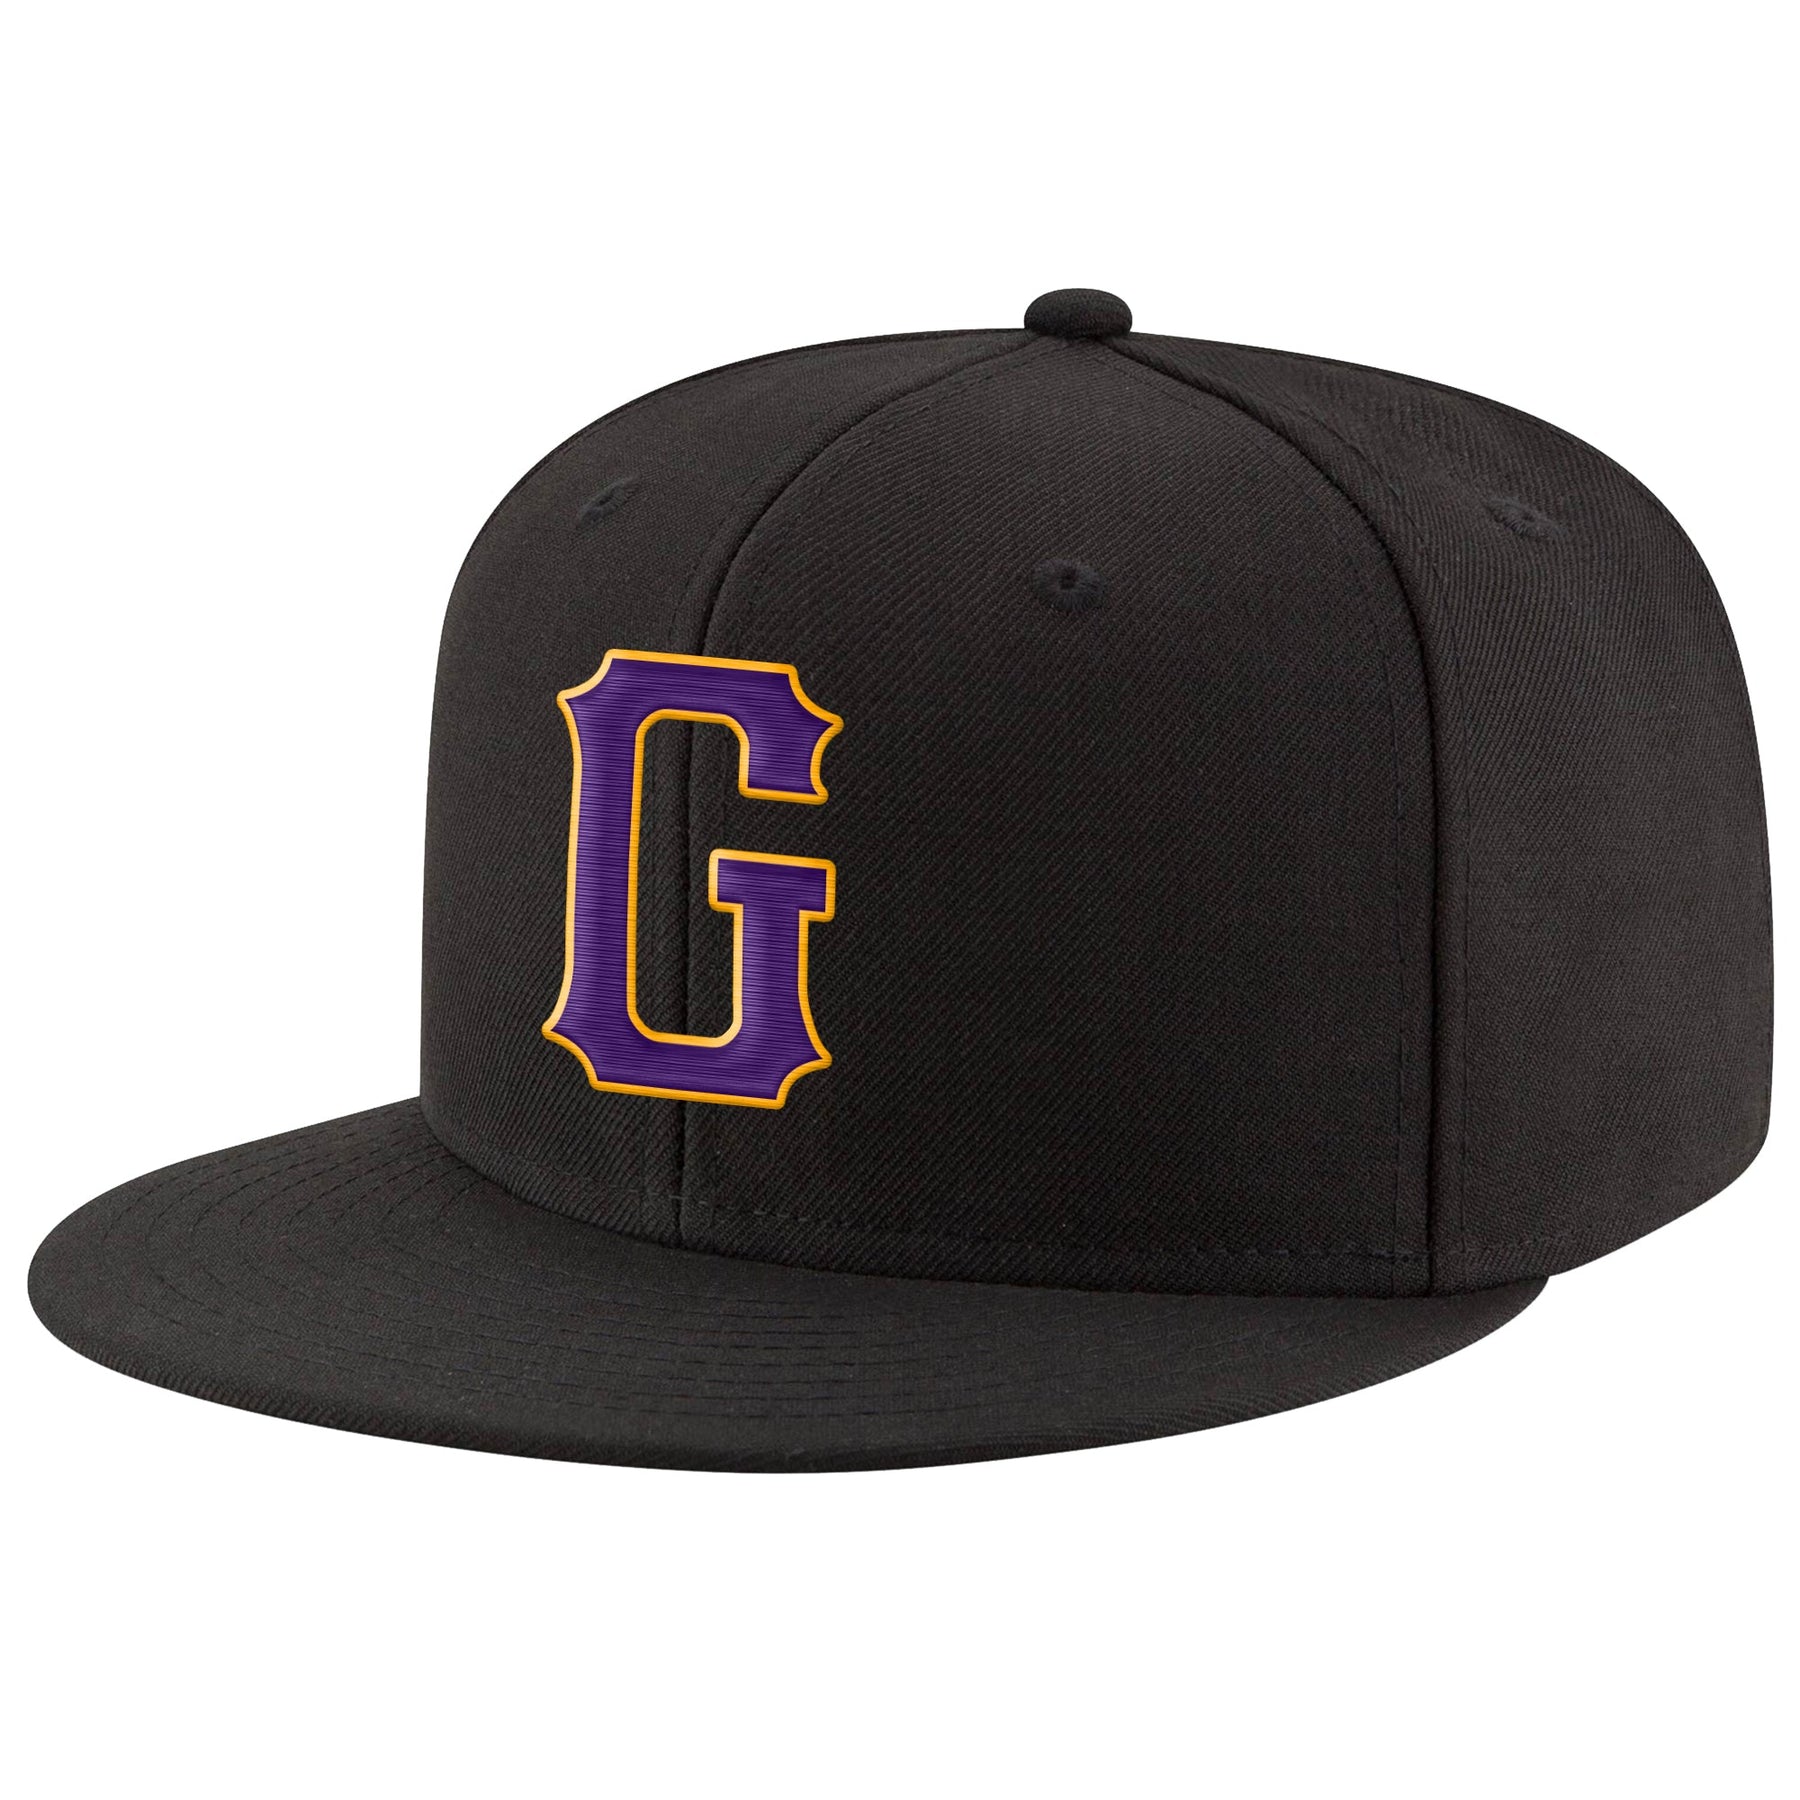 Custom Black Purple-Gold Stitched Adjustable Snapback Hat